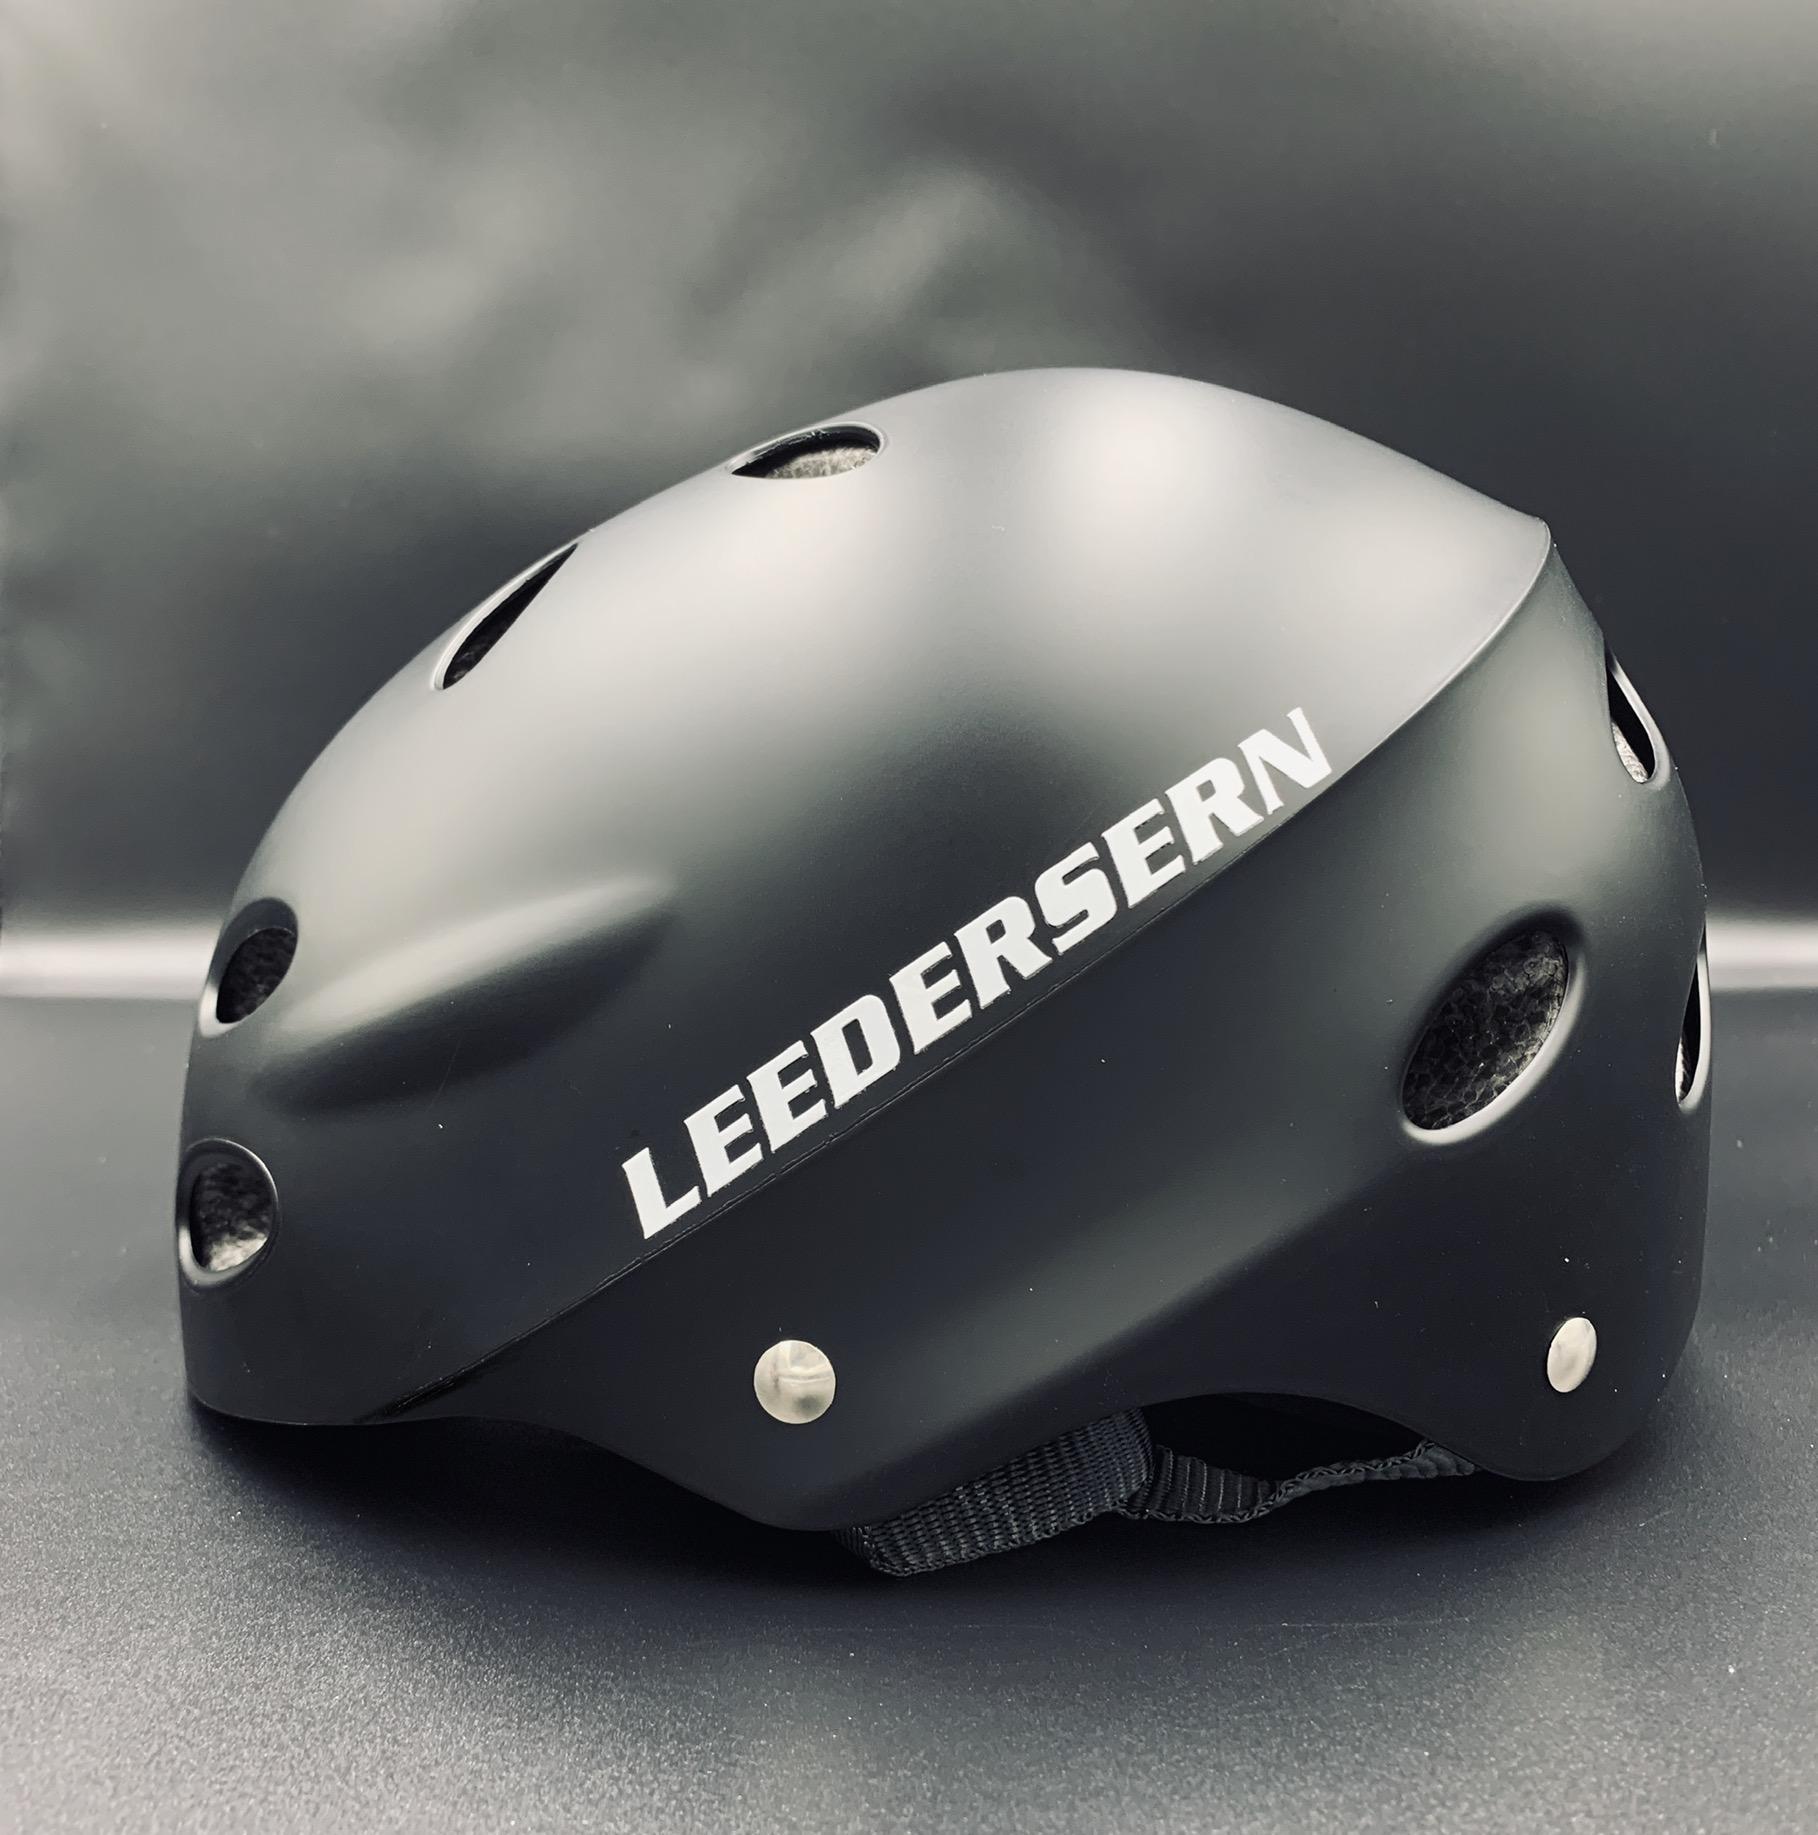 หมวกจักรยาน LEEDERSERN 2021 (ทรง FOX) ไซซ์ M/L 54-62 cm.